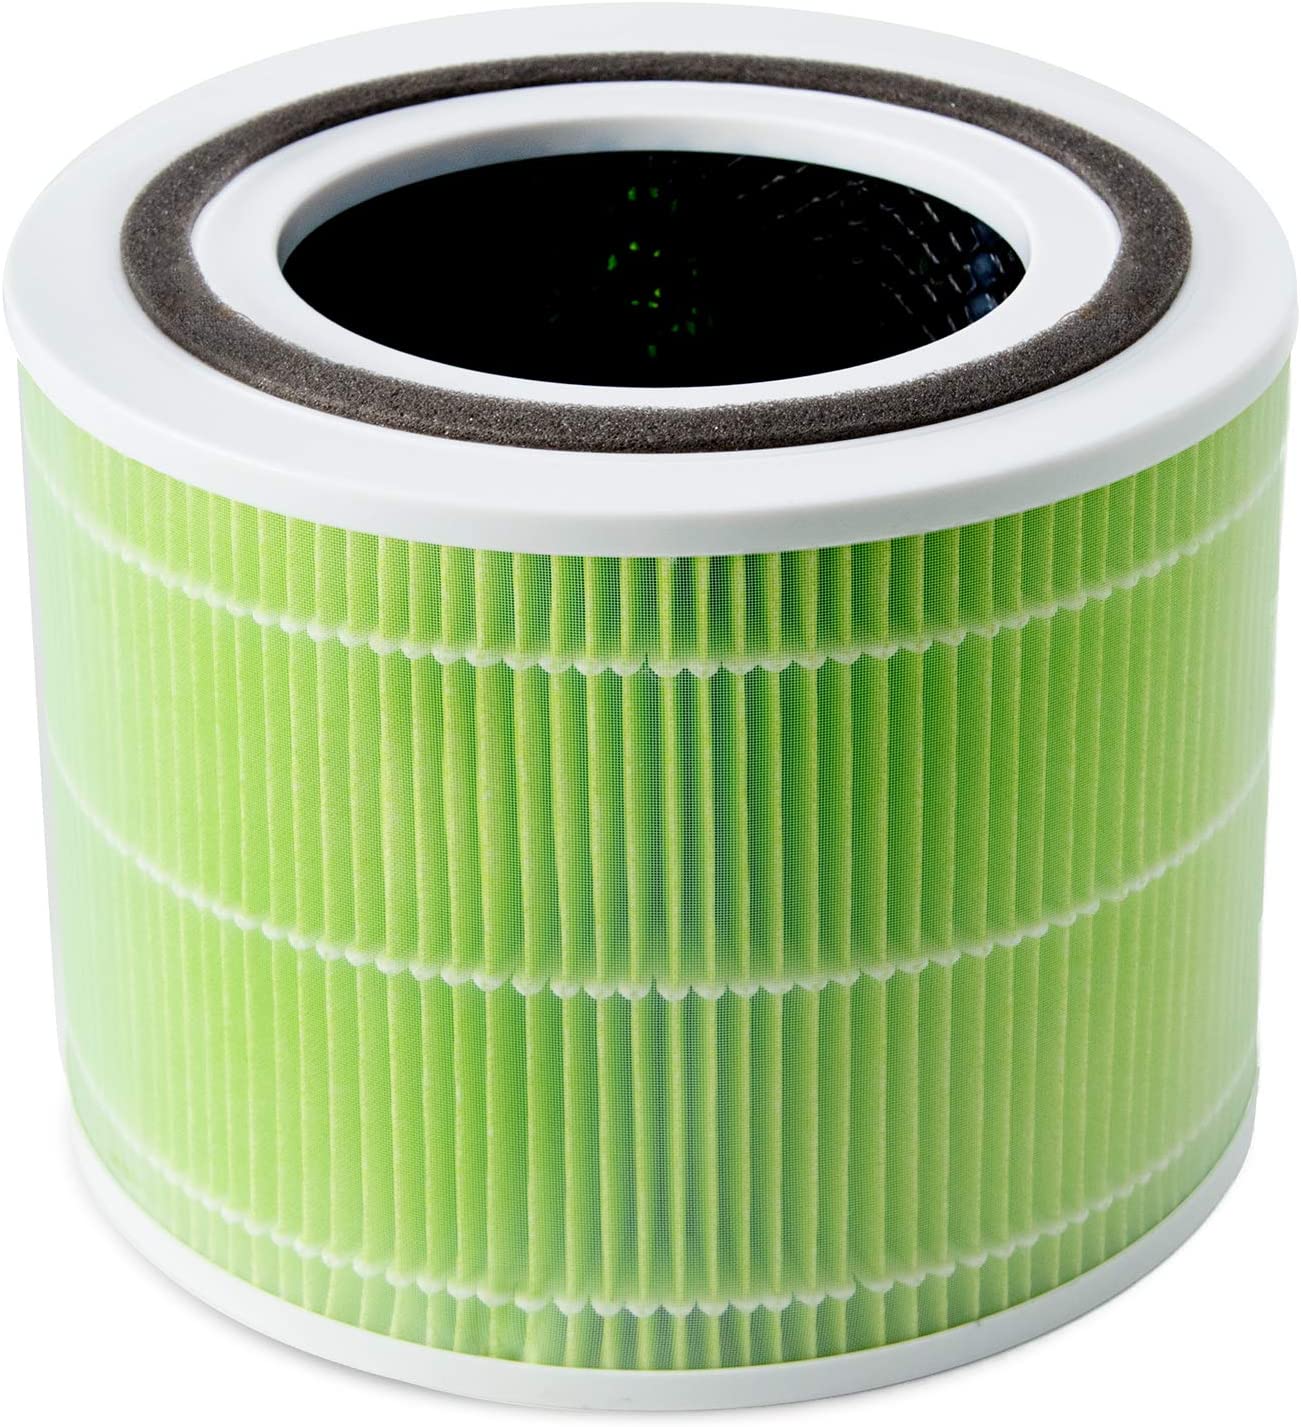 Отзывы фильтр для увлажнителя воздуха Levoit Air Cleaner Filter Core 300 True HEPA 3-Stage (Original Mold and Bacteria Filter)